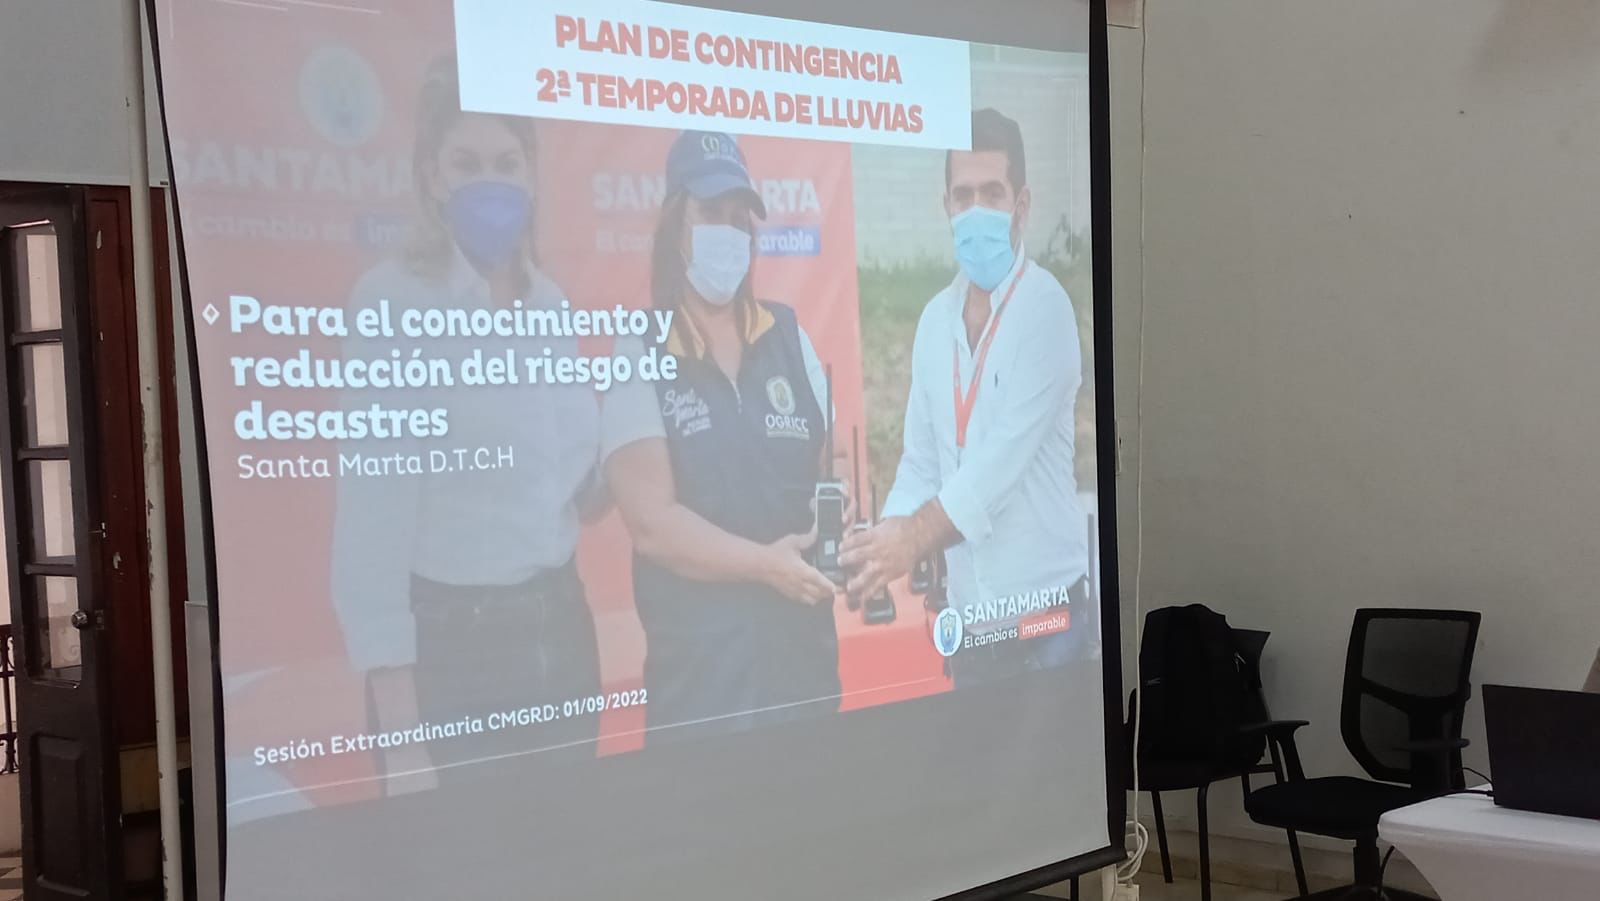 Ogricc socializó el plan de contingencia para la segunda temporada de lluvias 2022